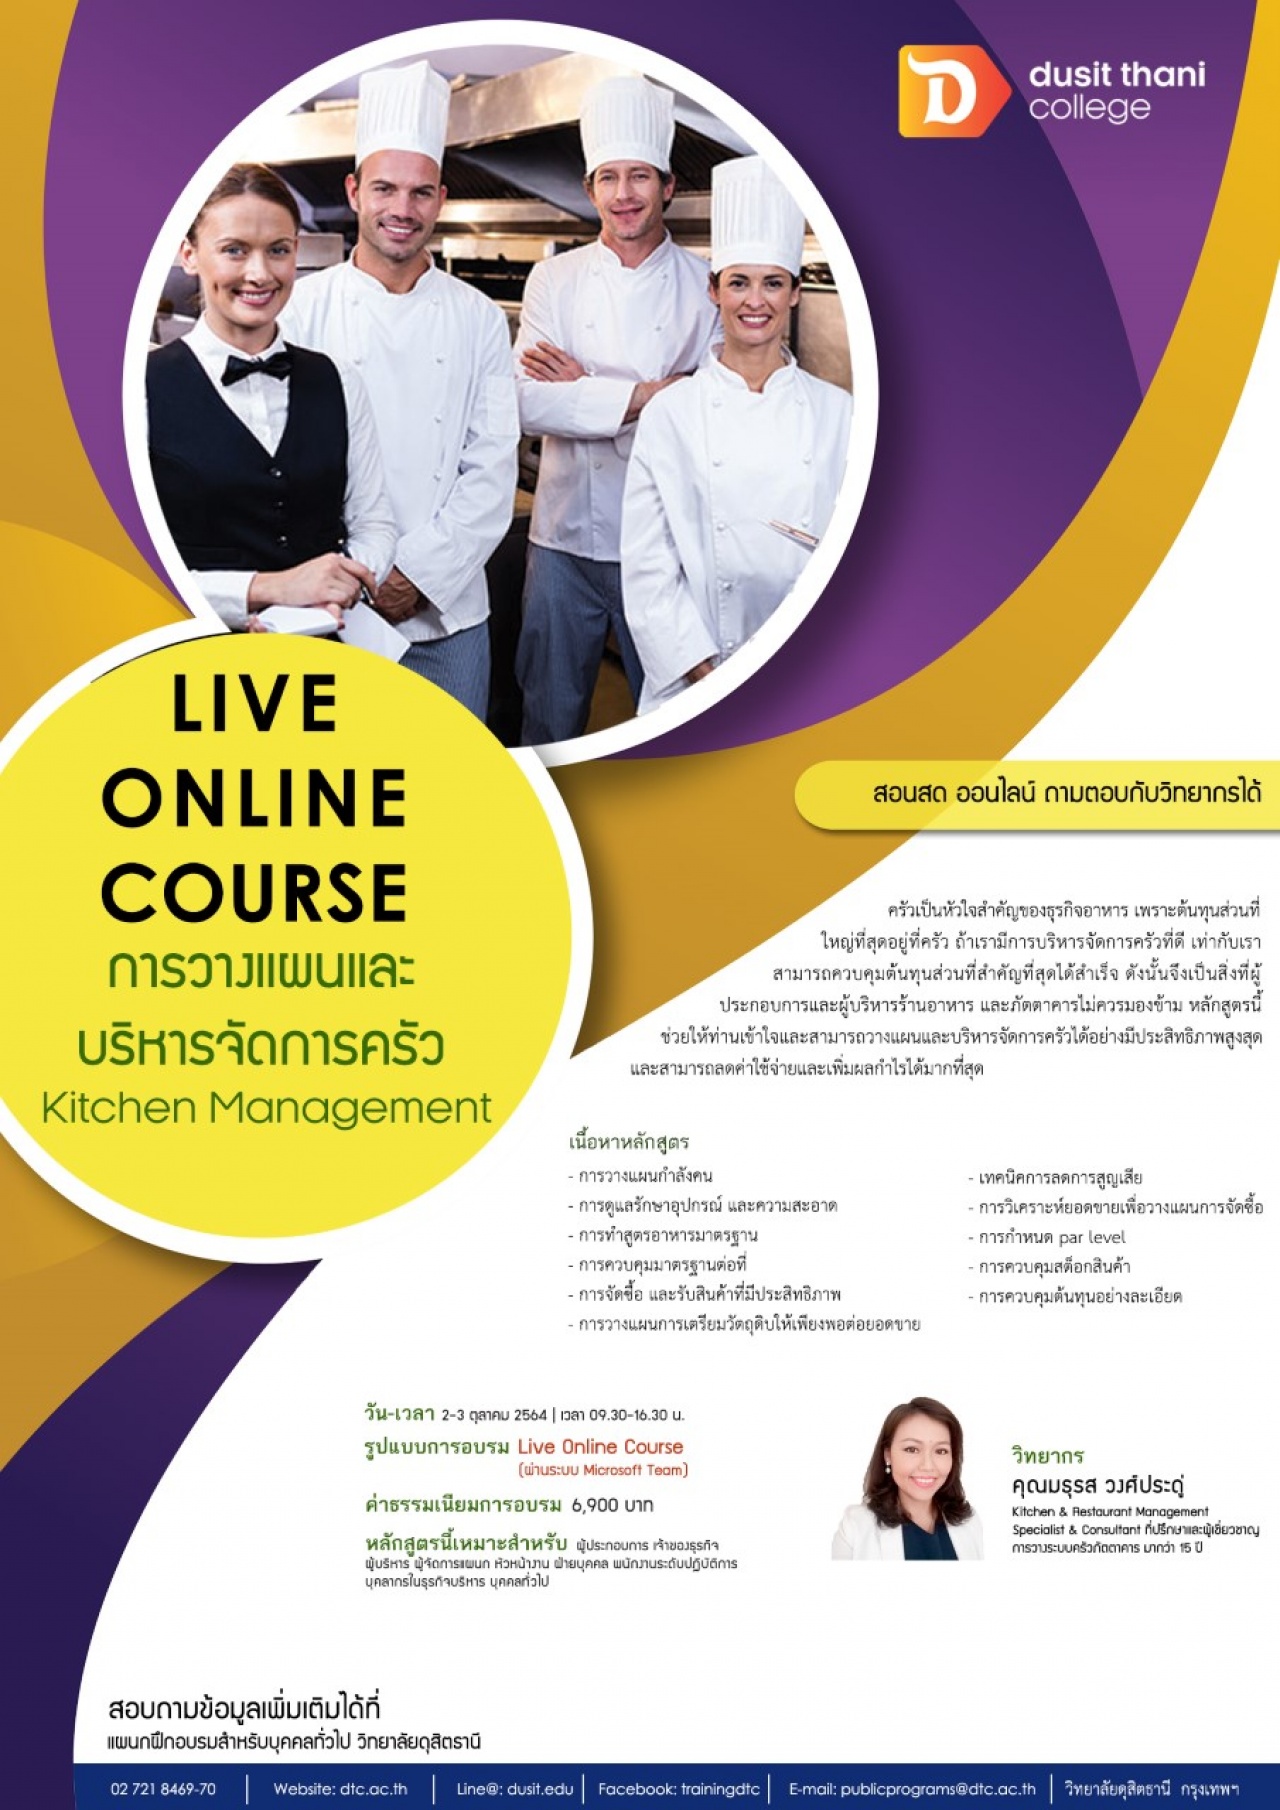 หลักสูตรการวางแผนและบริหารจัดการครัว Kitchen Management รูปแบบ Live online course